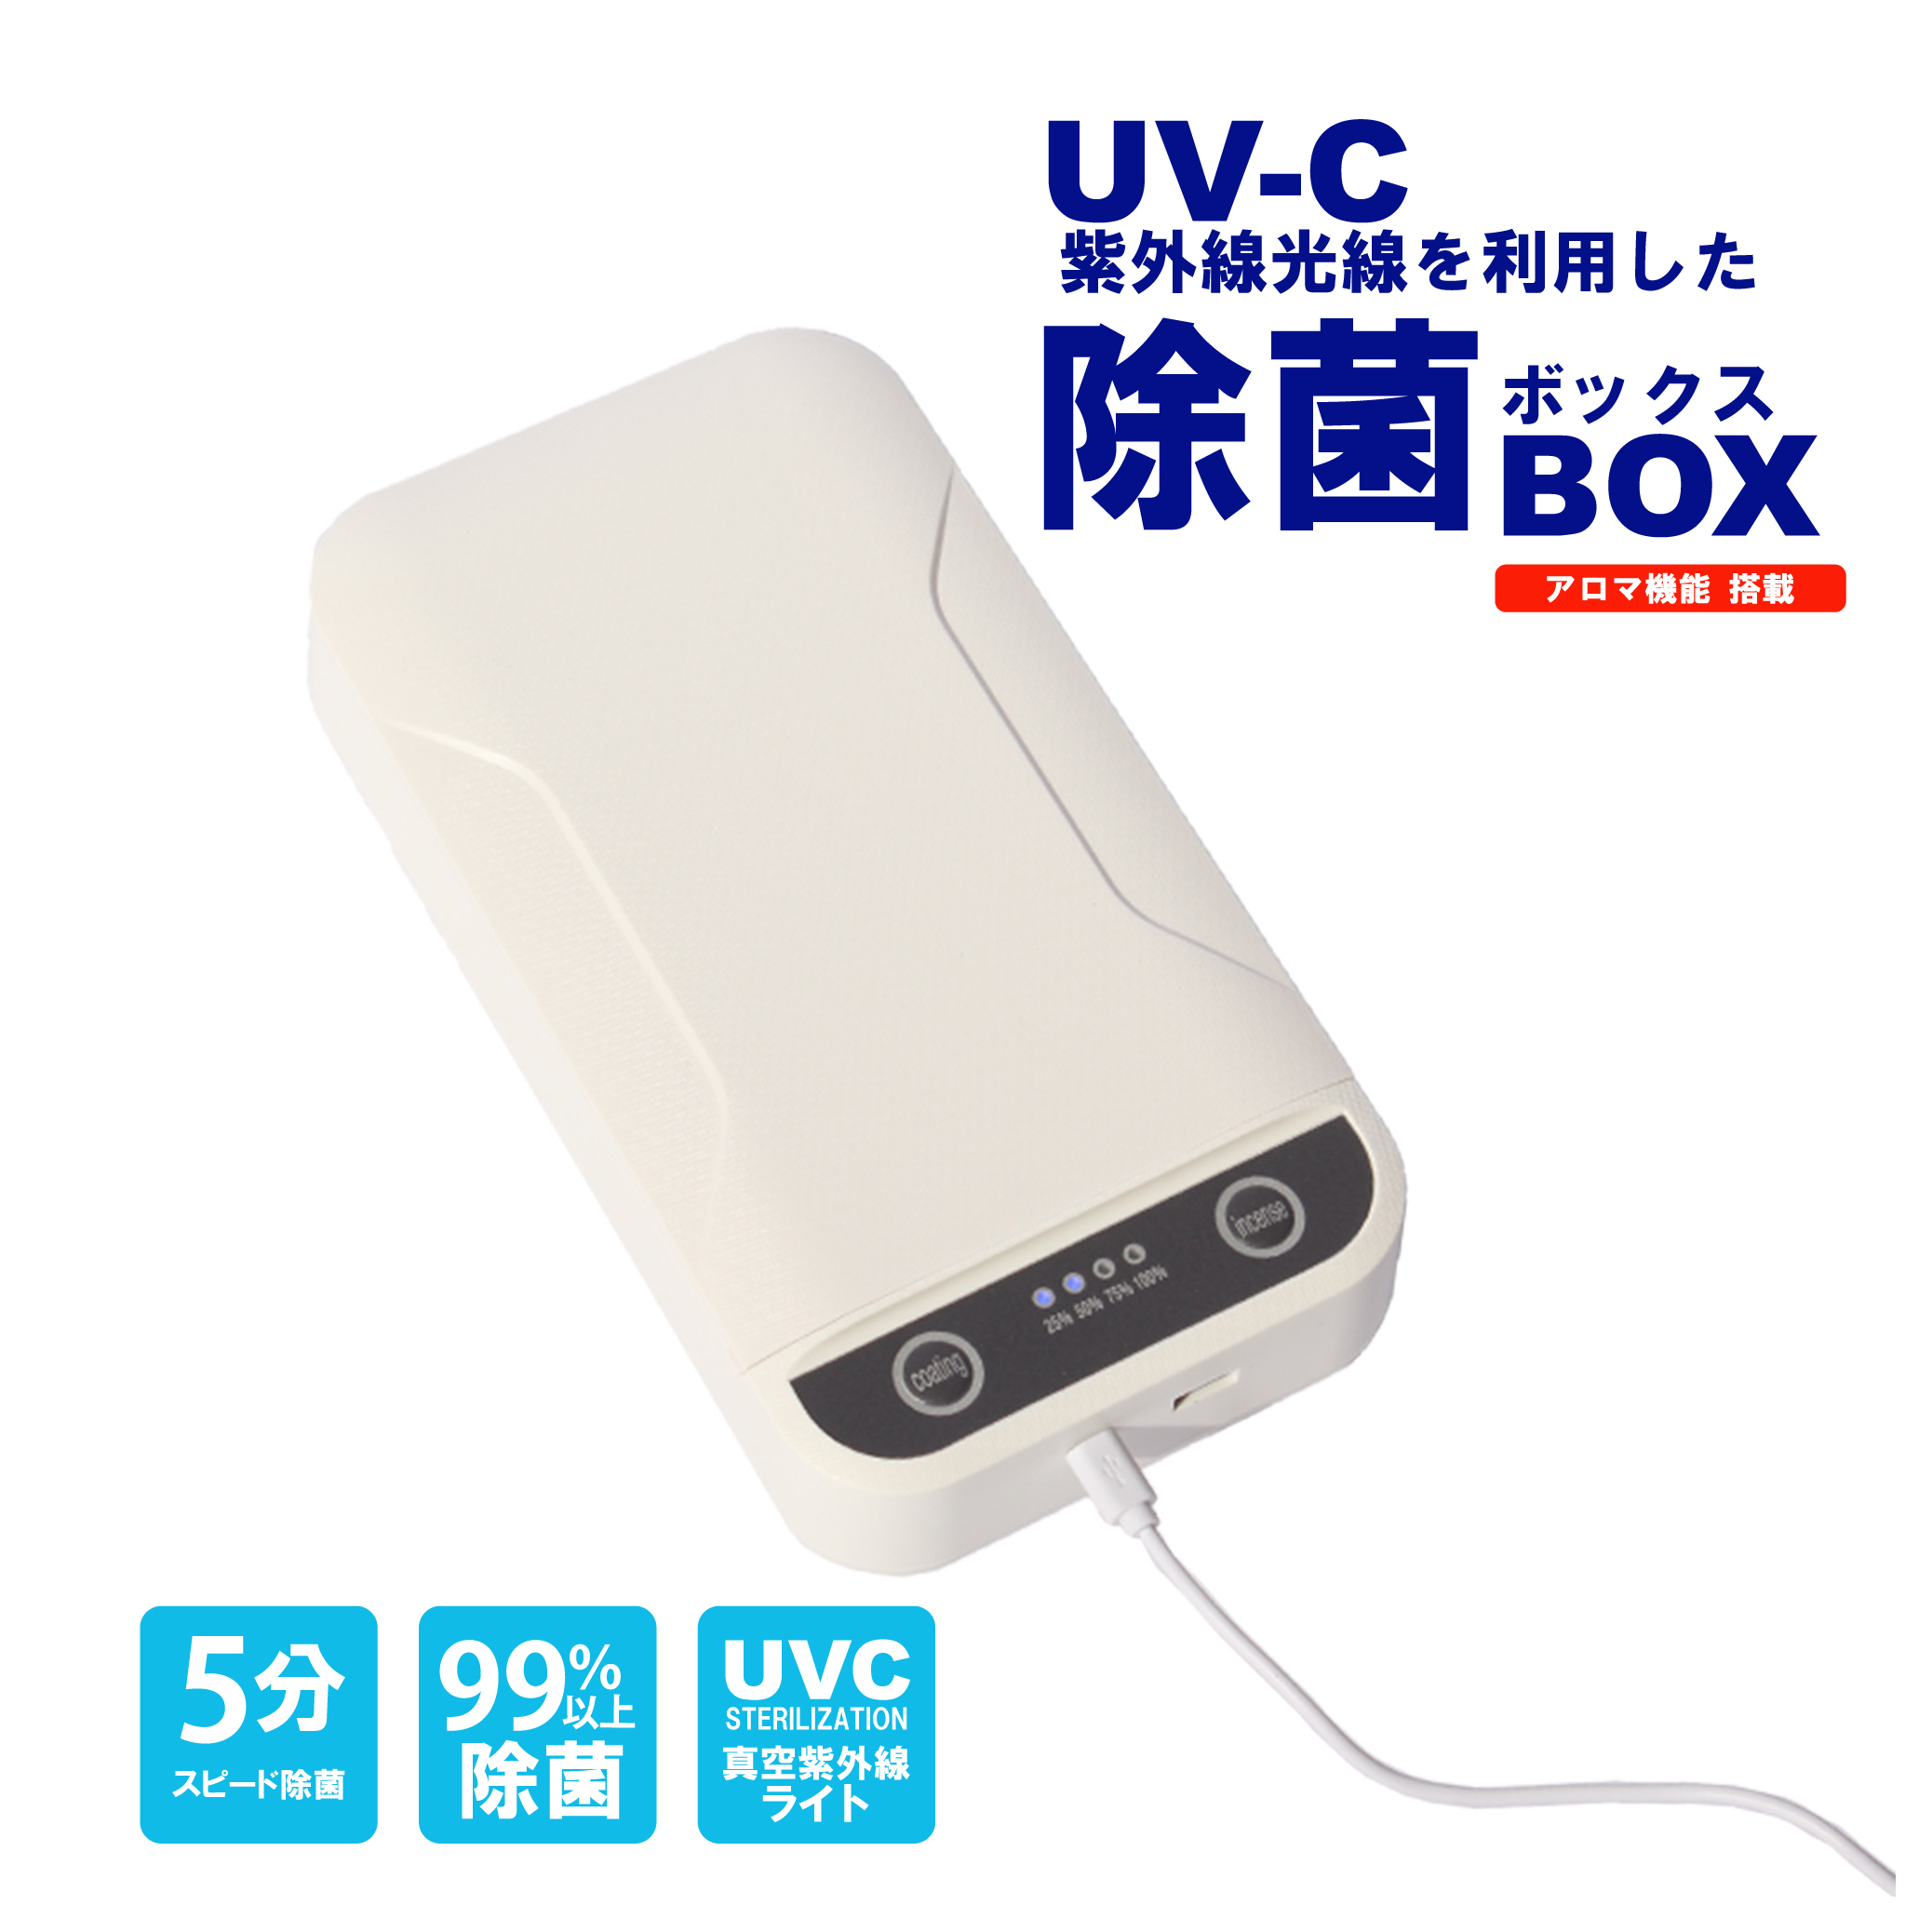 【紫外線光線を利用した】UV-C 除菌ボックス | (株)ロイヤル 得意先様専用 卸売りサイト